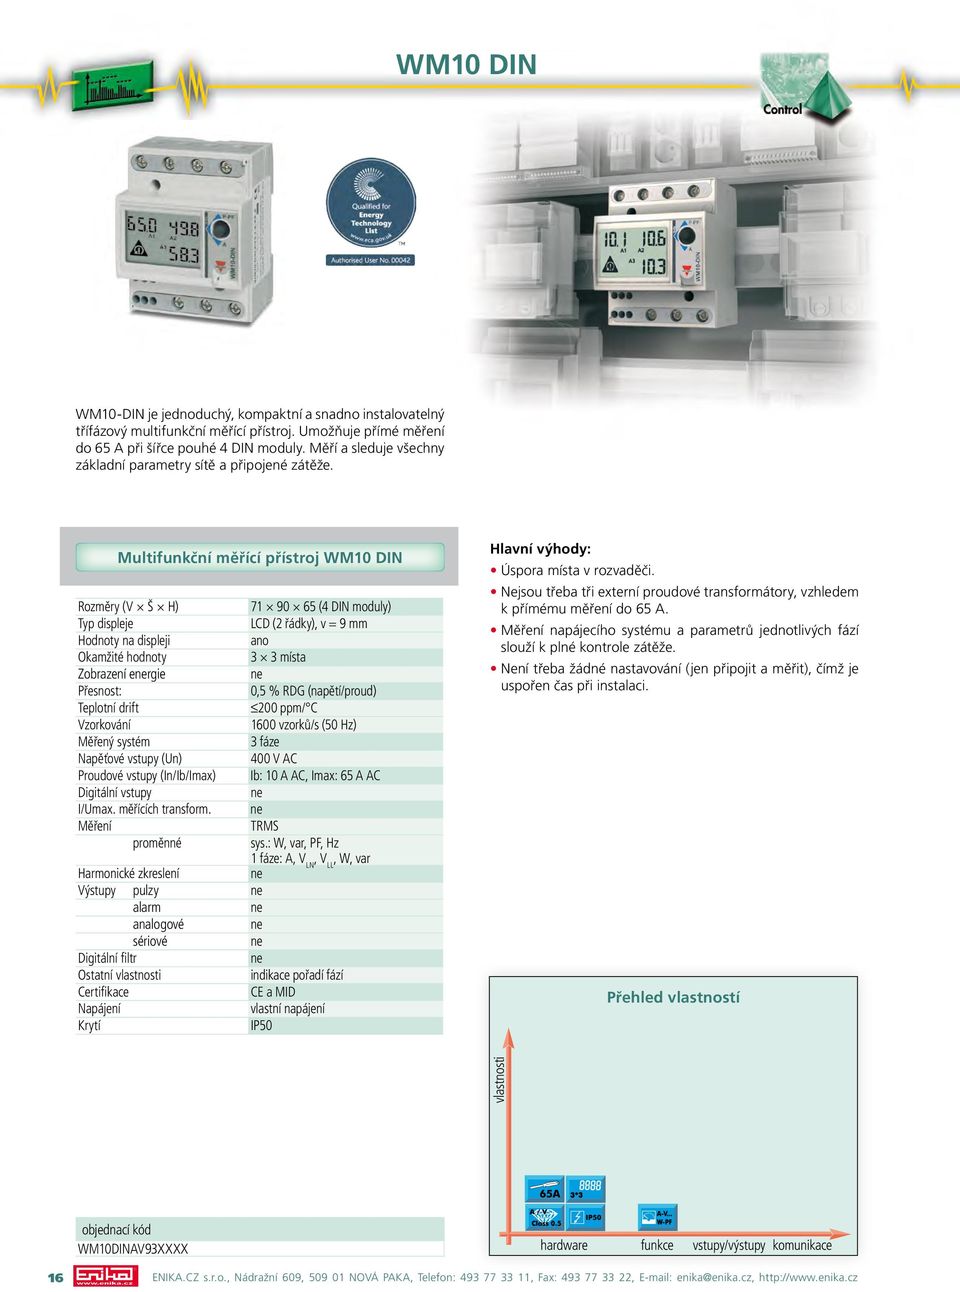 Multifunkční měřící přístroj WM10 DIN 71 90 65 (4 DIN moduly) Typ displeje LCD (2 řádky), v = 9 mm Hodnoty na displeji ano 3 3 místa Zobrazení ergie Přesnost: 0,5 % RDG (napětí/proud) 200 ppm/ C